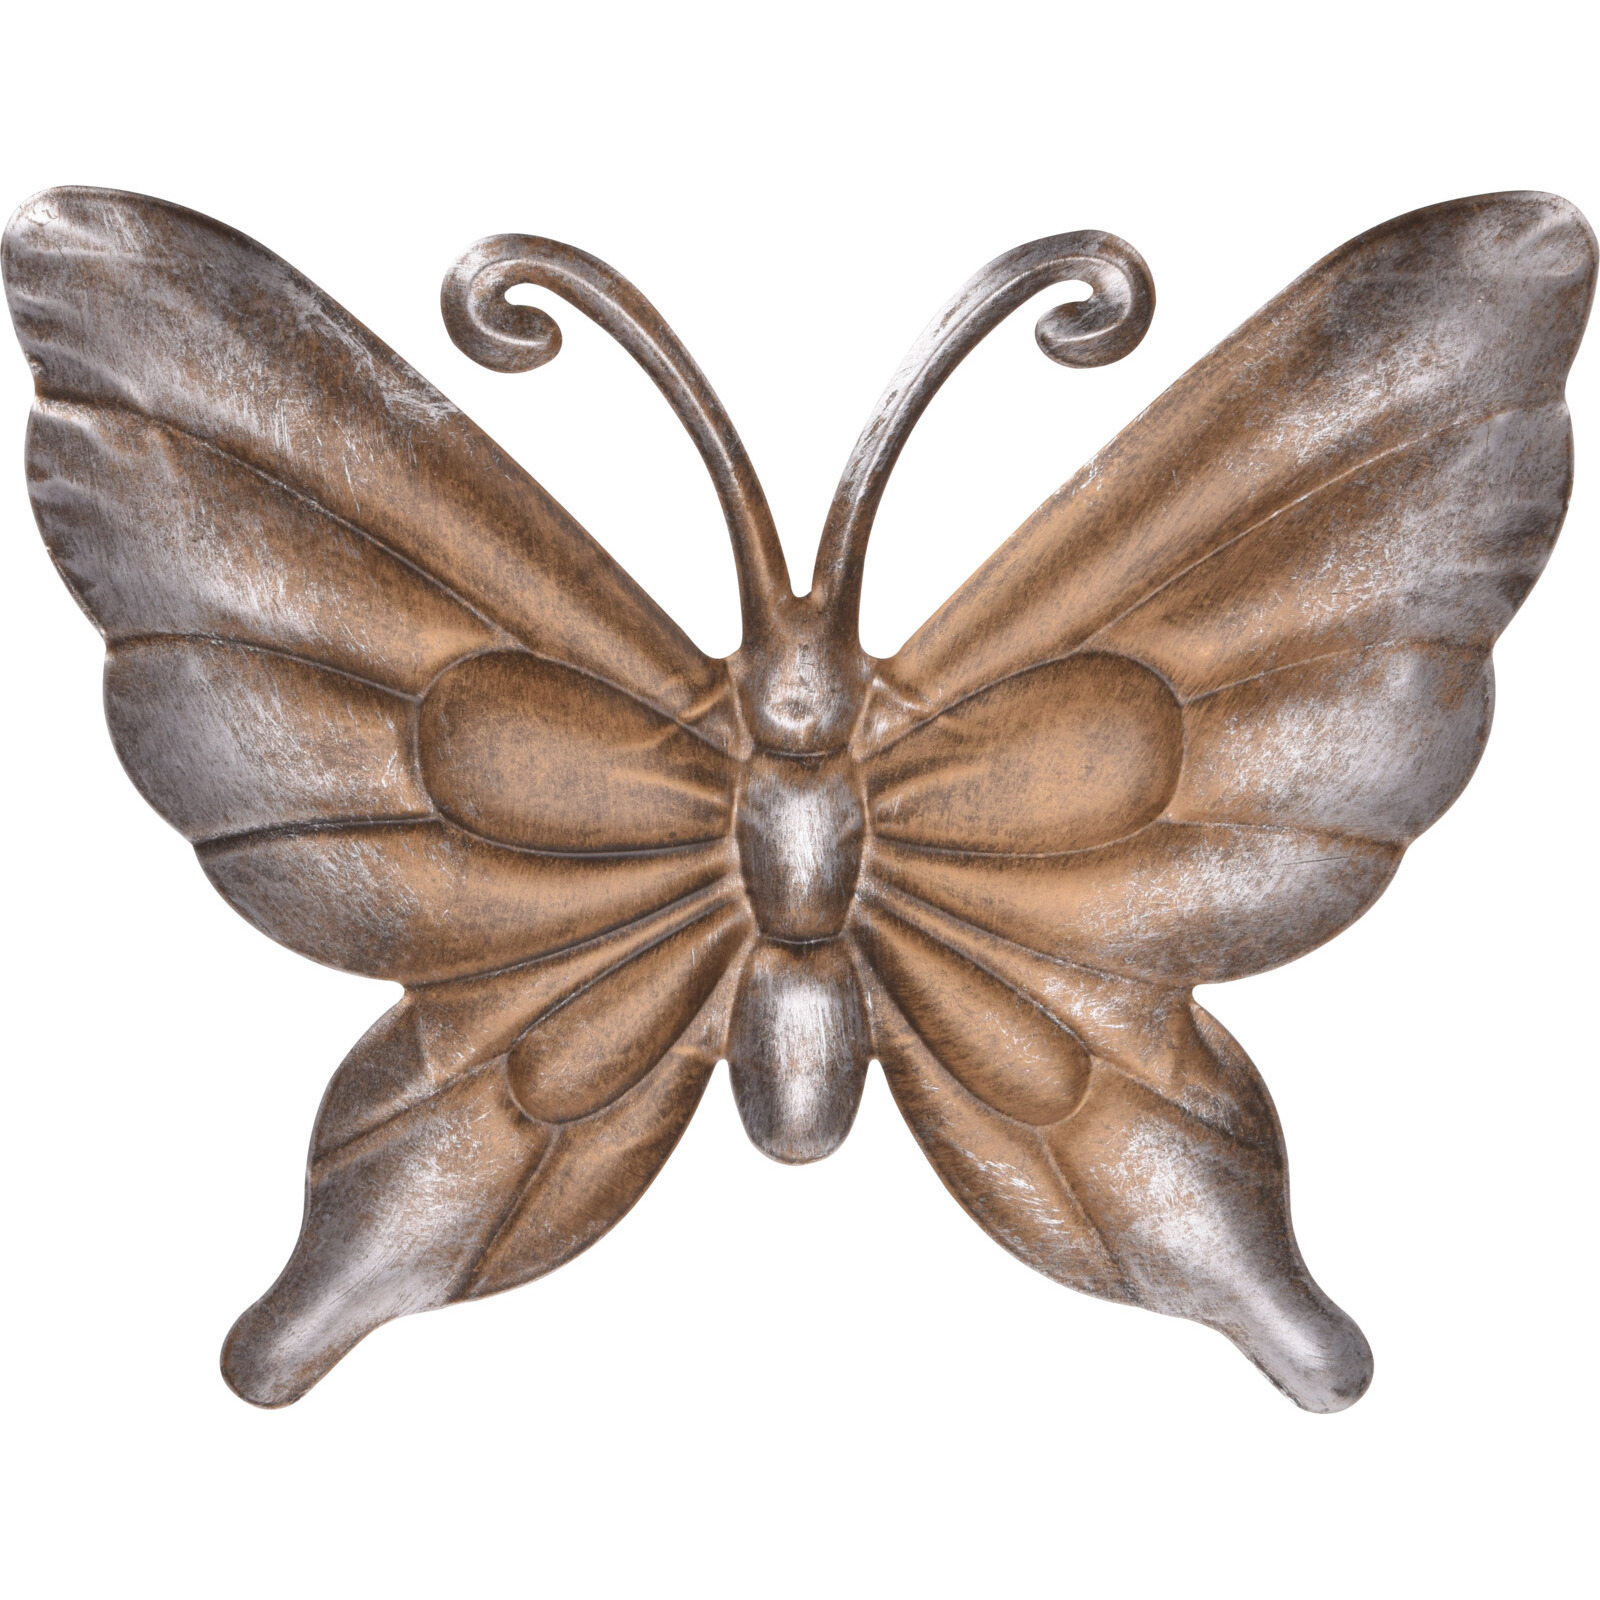 Is aan het huilen geroosterd brood Grondwet Metalen vlinder donkerbruin/brons 29 x 24 cm tuin decoratie | Surprise  winkel